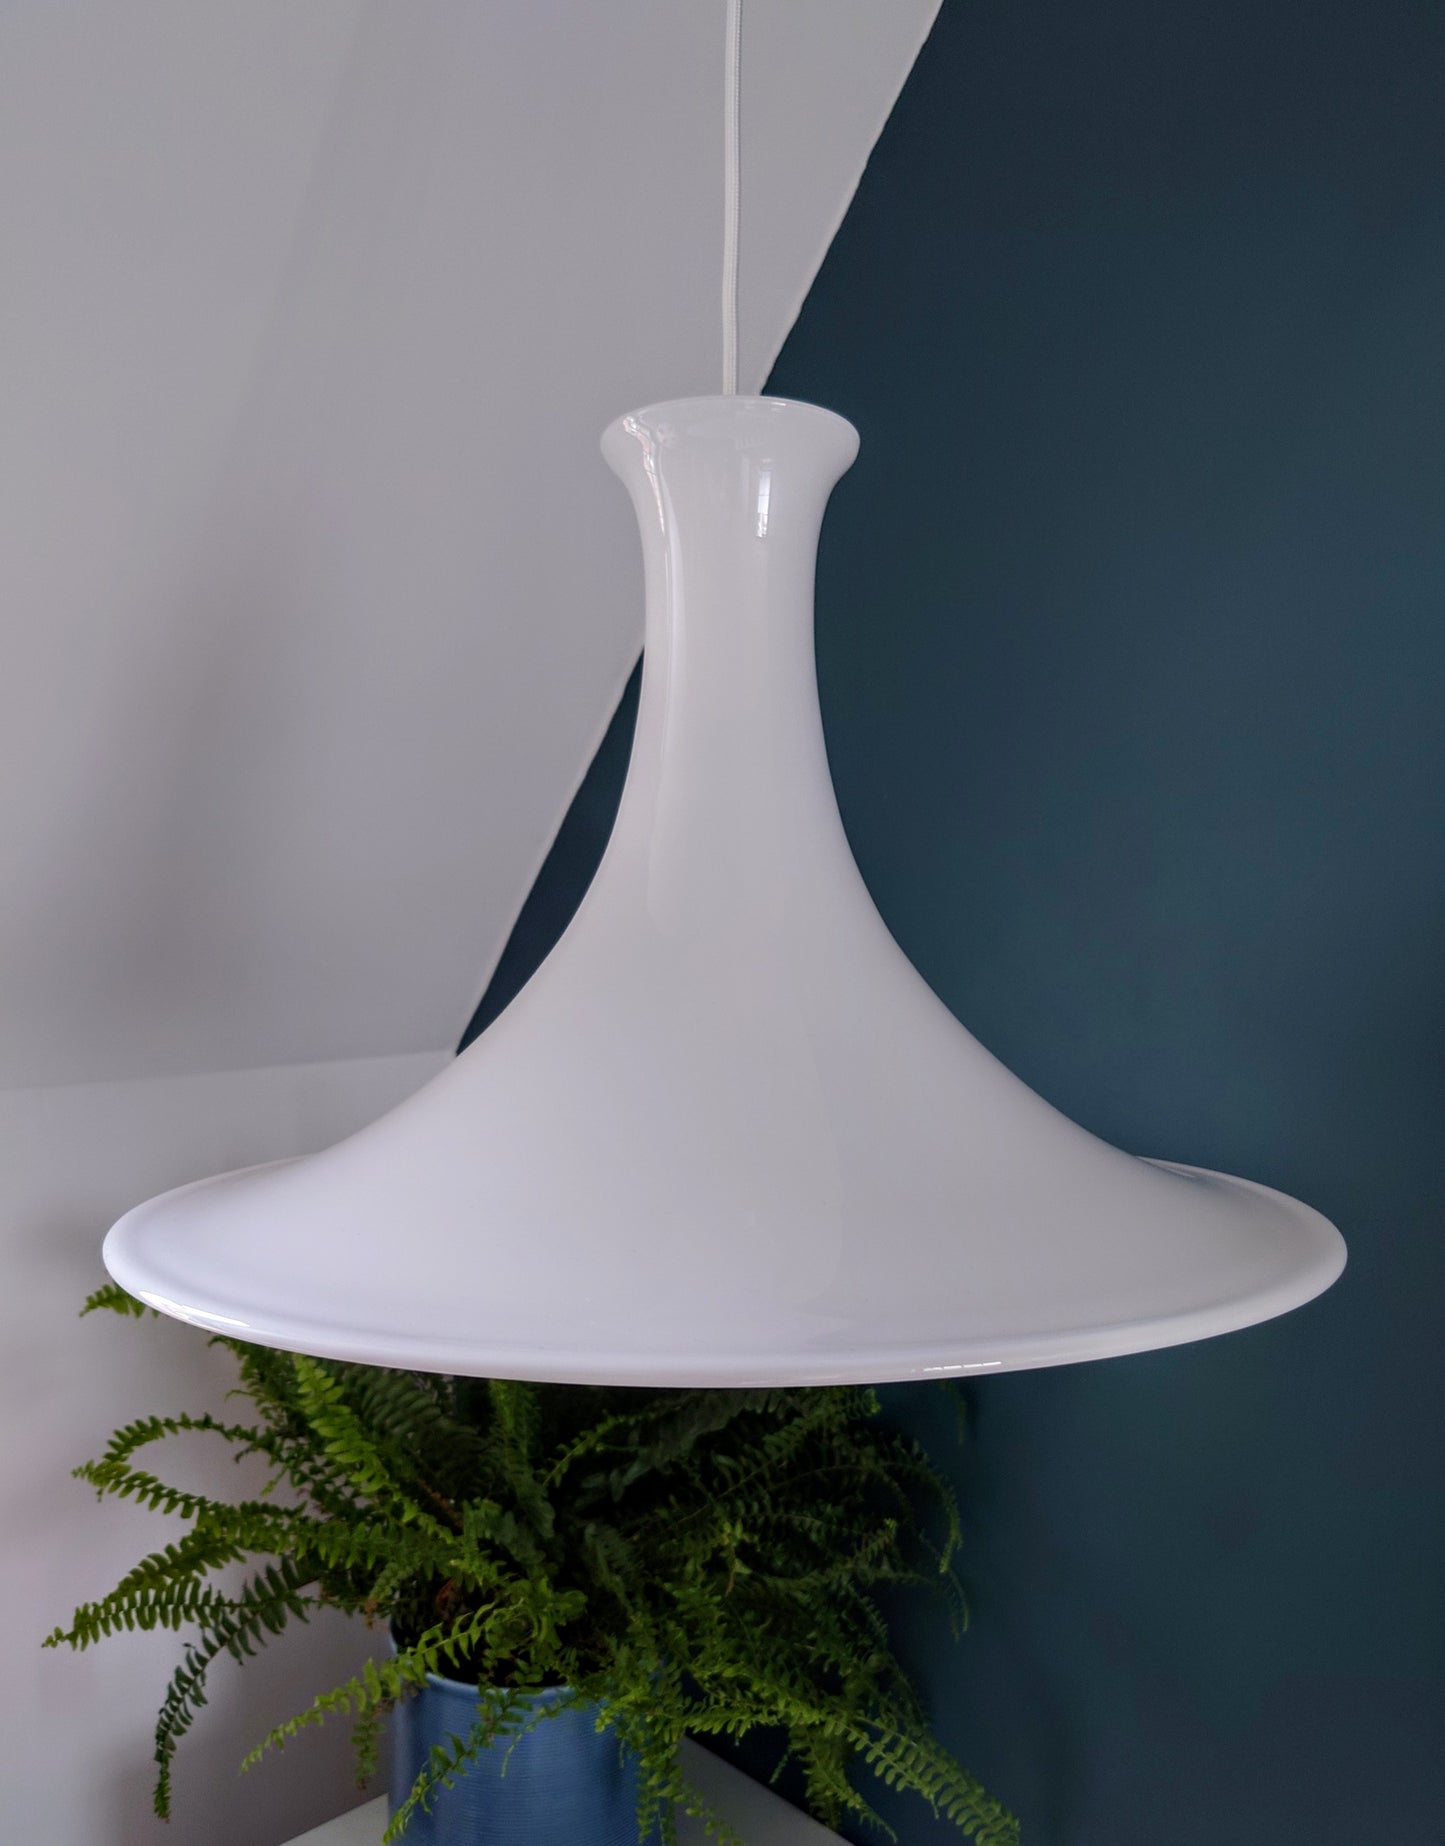 HUGE Holmegaard Danish White Glass Pendant Lamp Ceiling Light Mandarin 1980s Retro Scandinavian Scandi Design Style